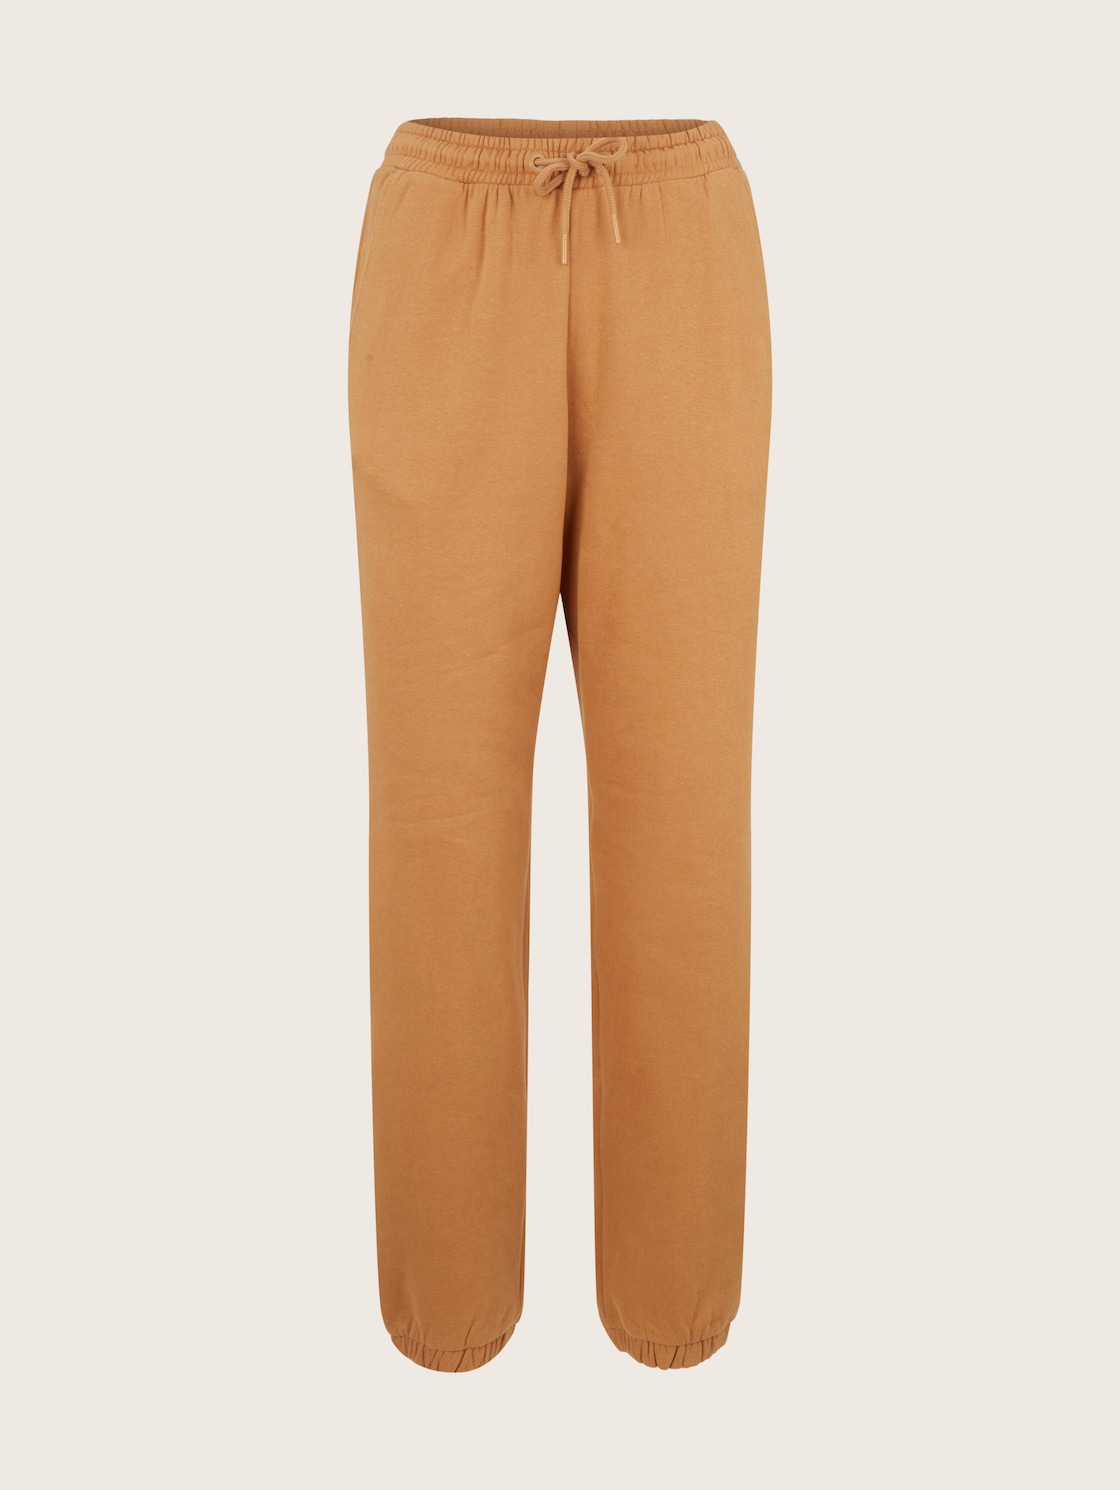 Спортивные брюки женские Tom Tailor Denim 1034512 коричневые S